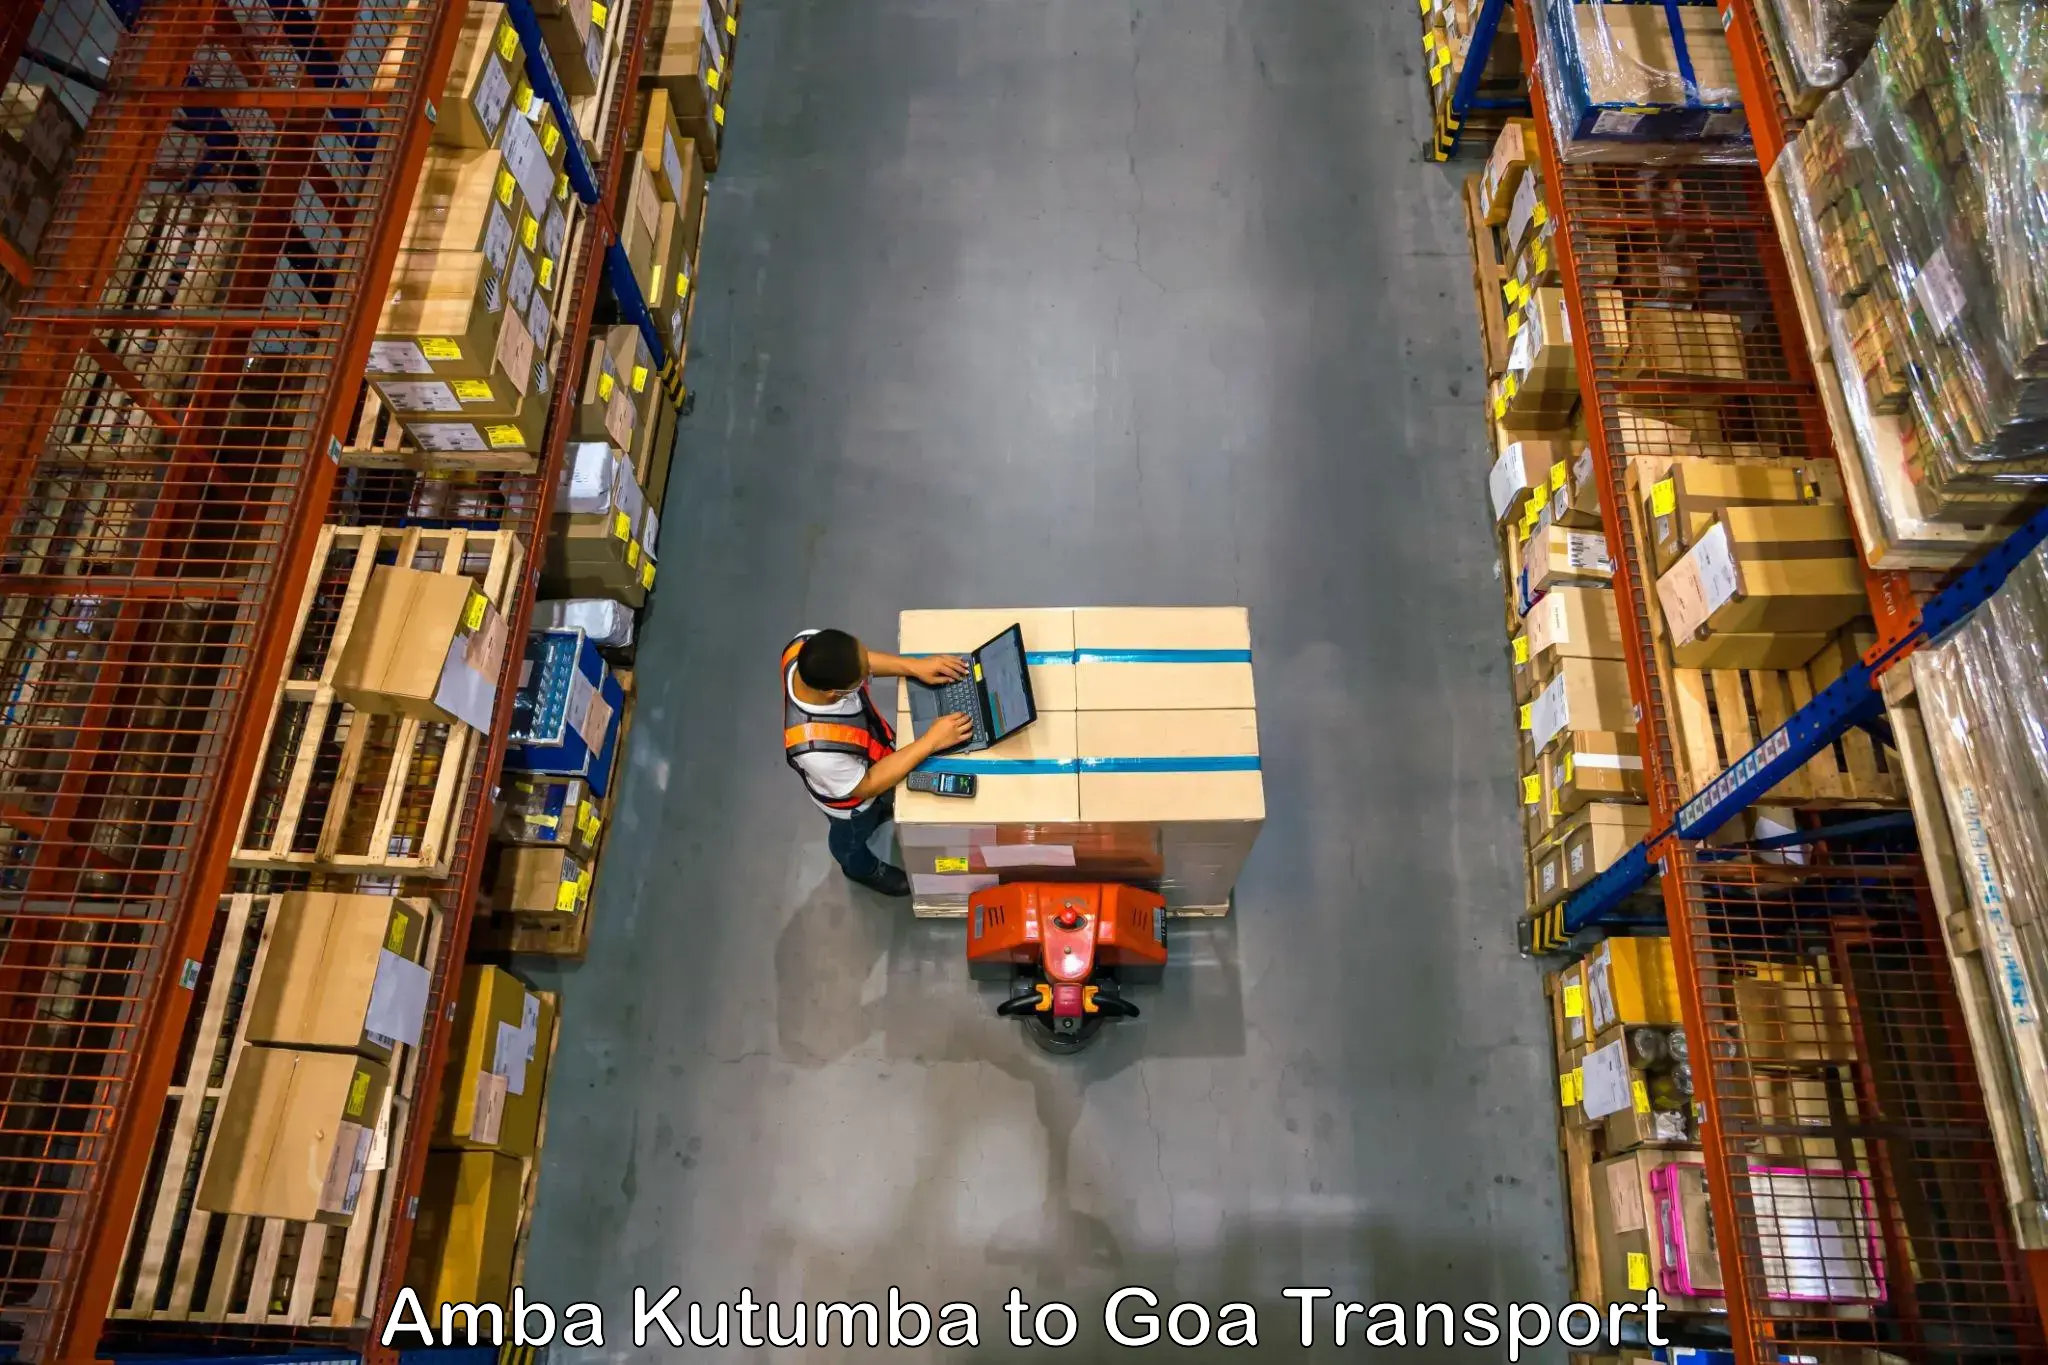 Daily parcel service transport Amba Kutumba to Canacona